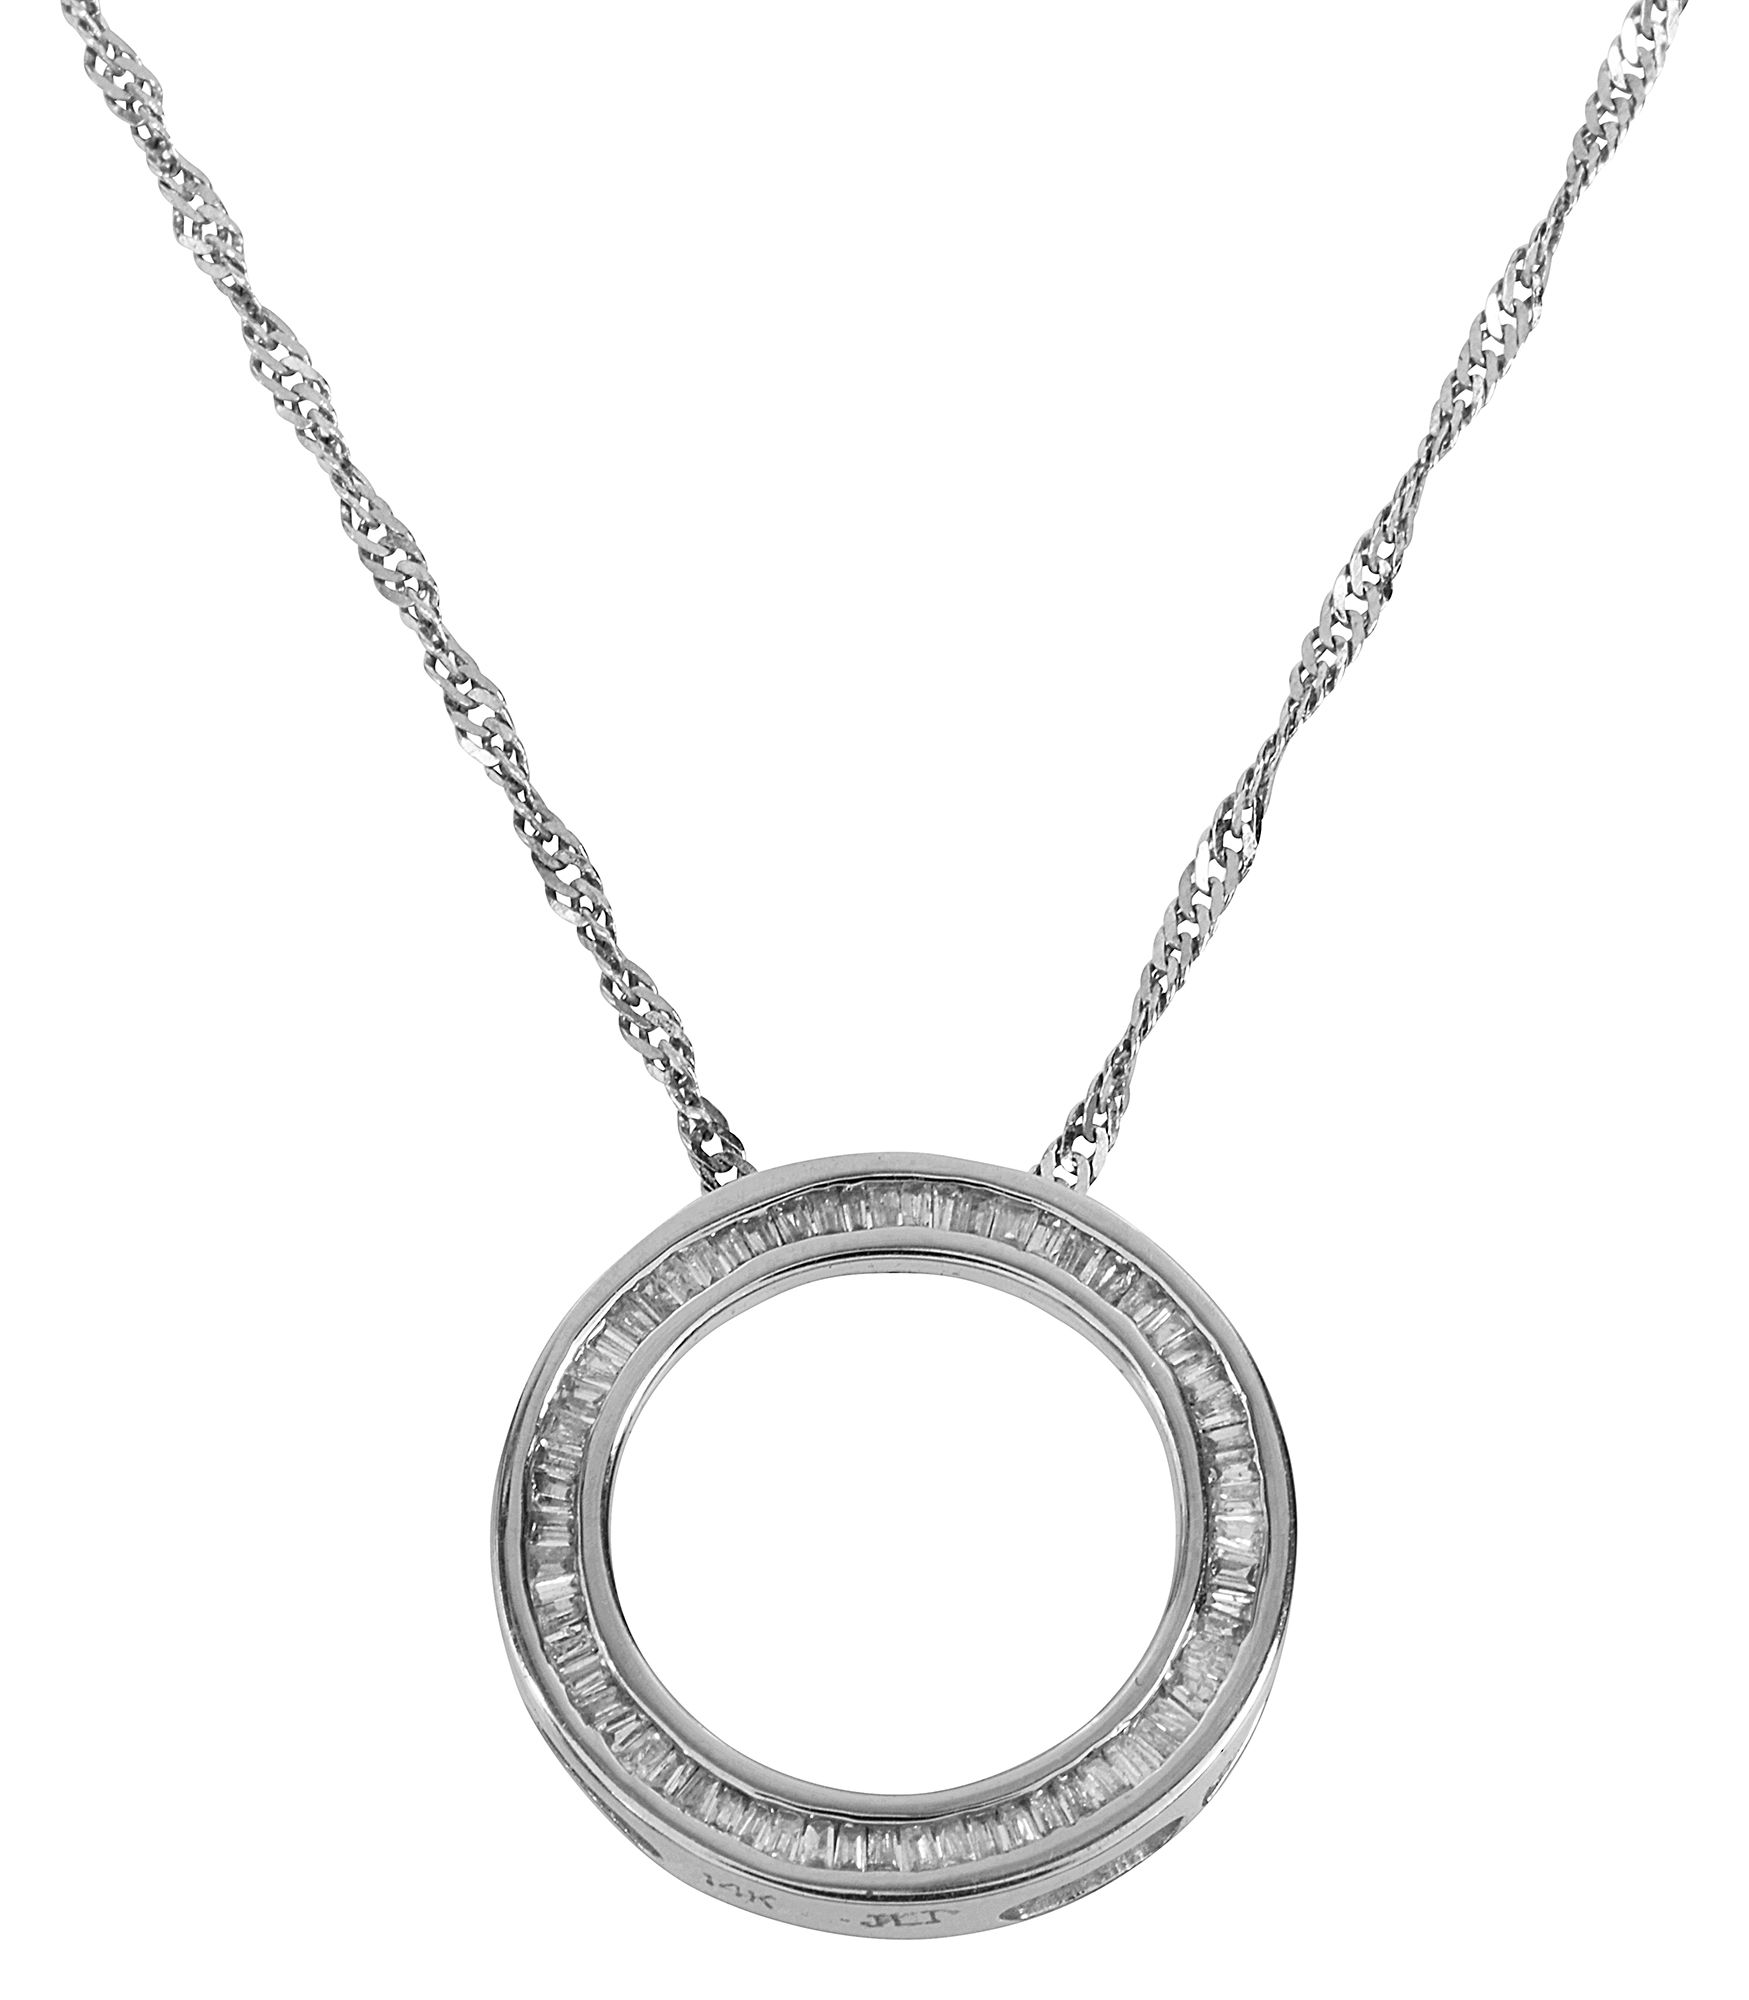 A diamond-set open work circular pendant